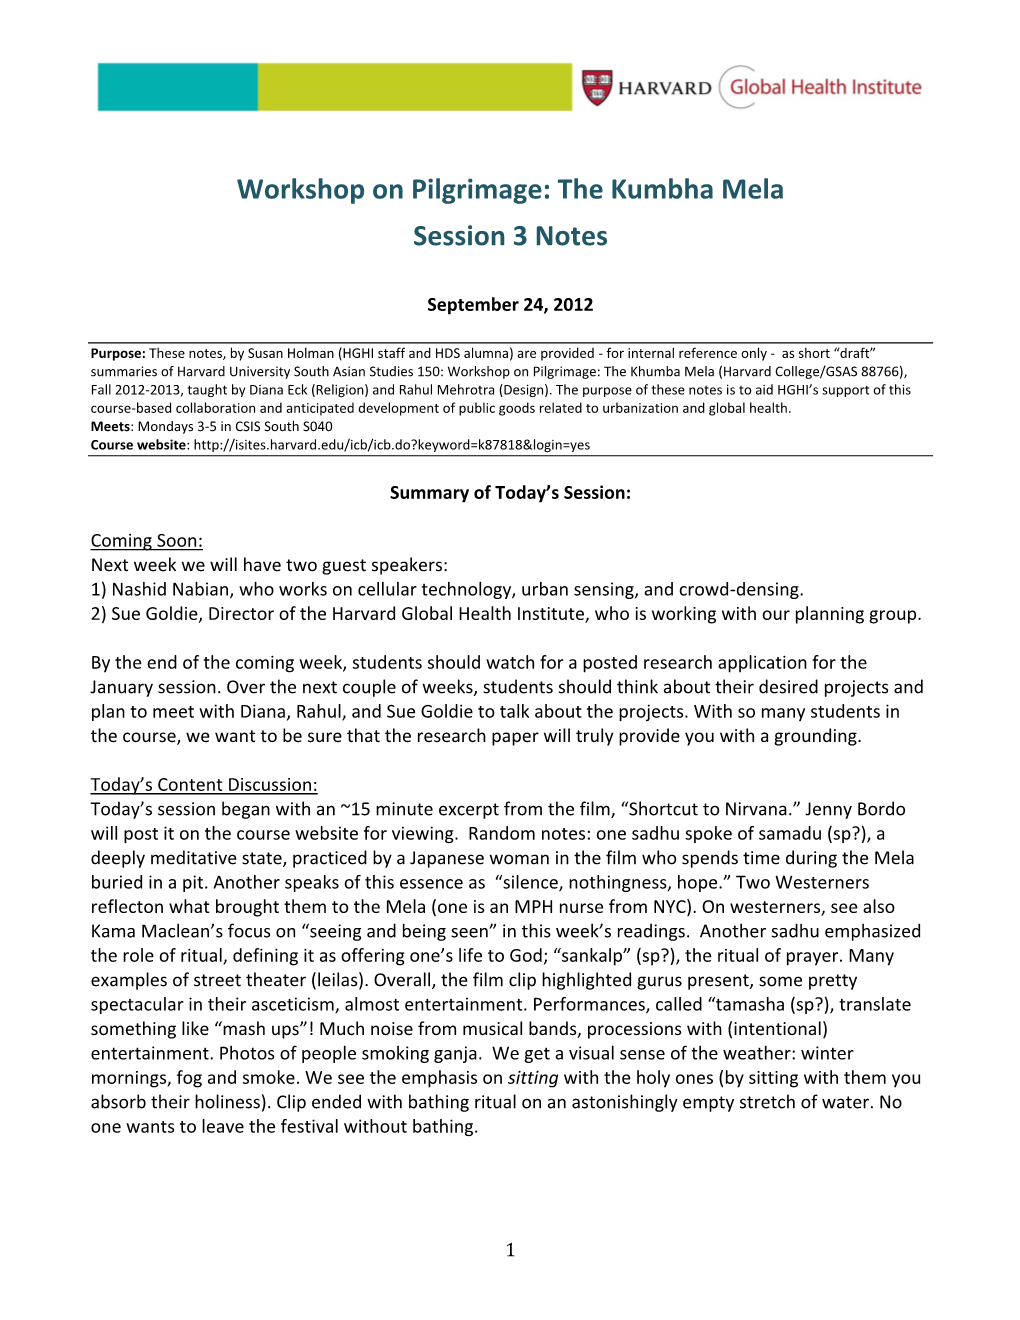 Workshop on Pilgrimage: the Kumbha Mela Session 3 Notes